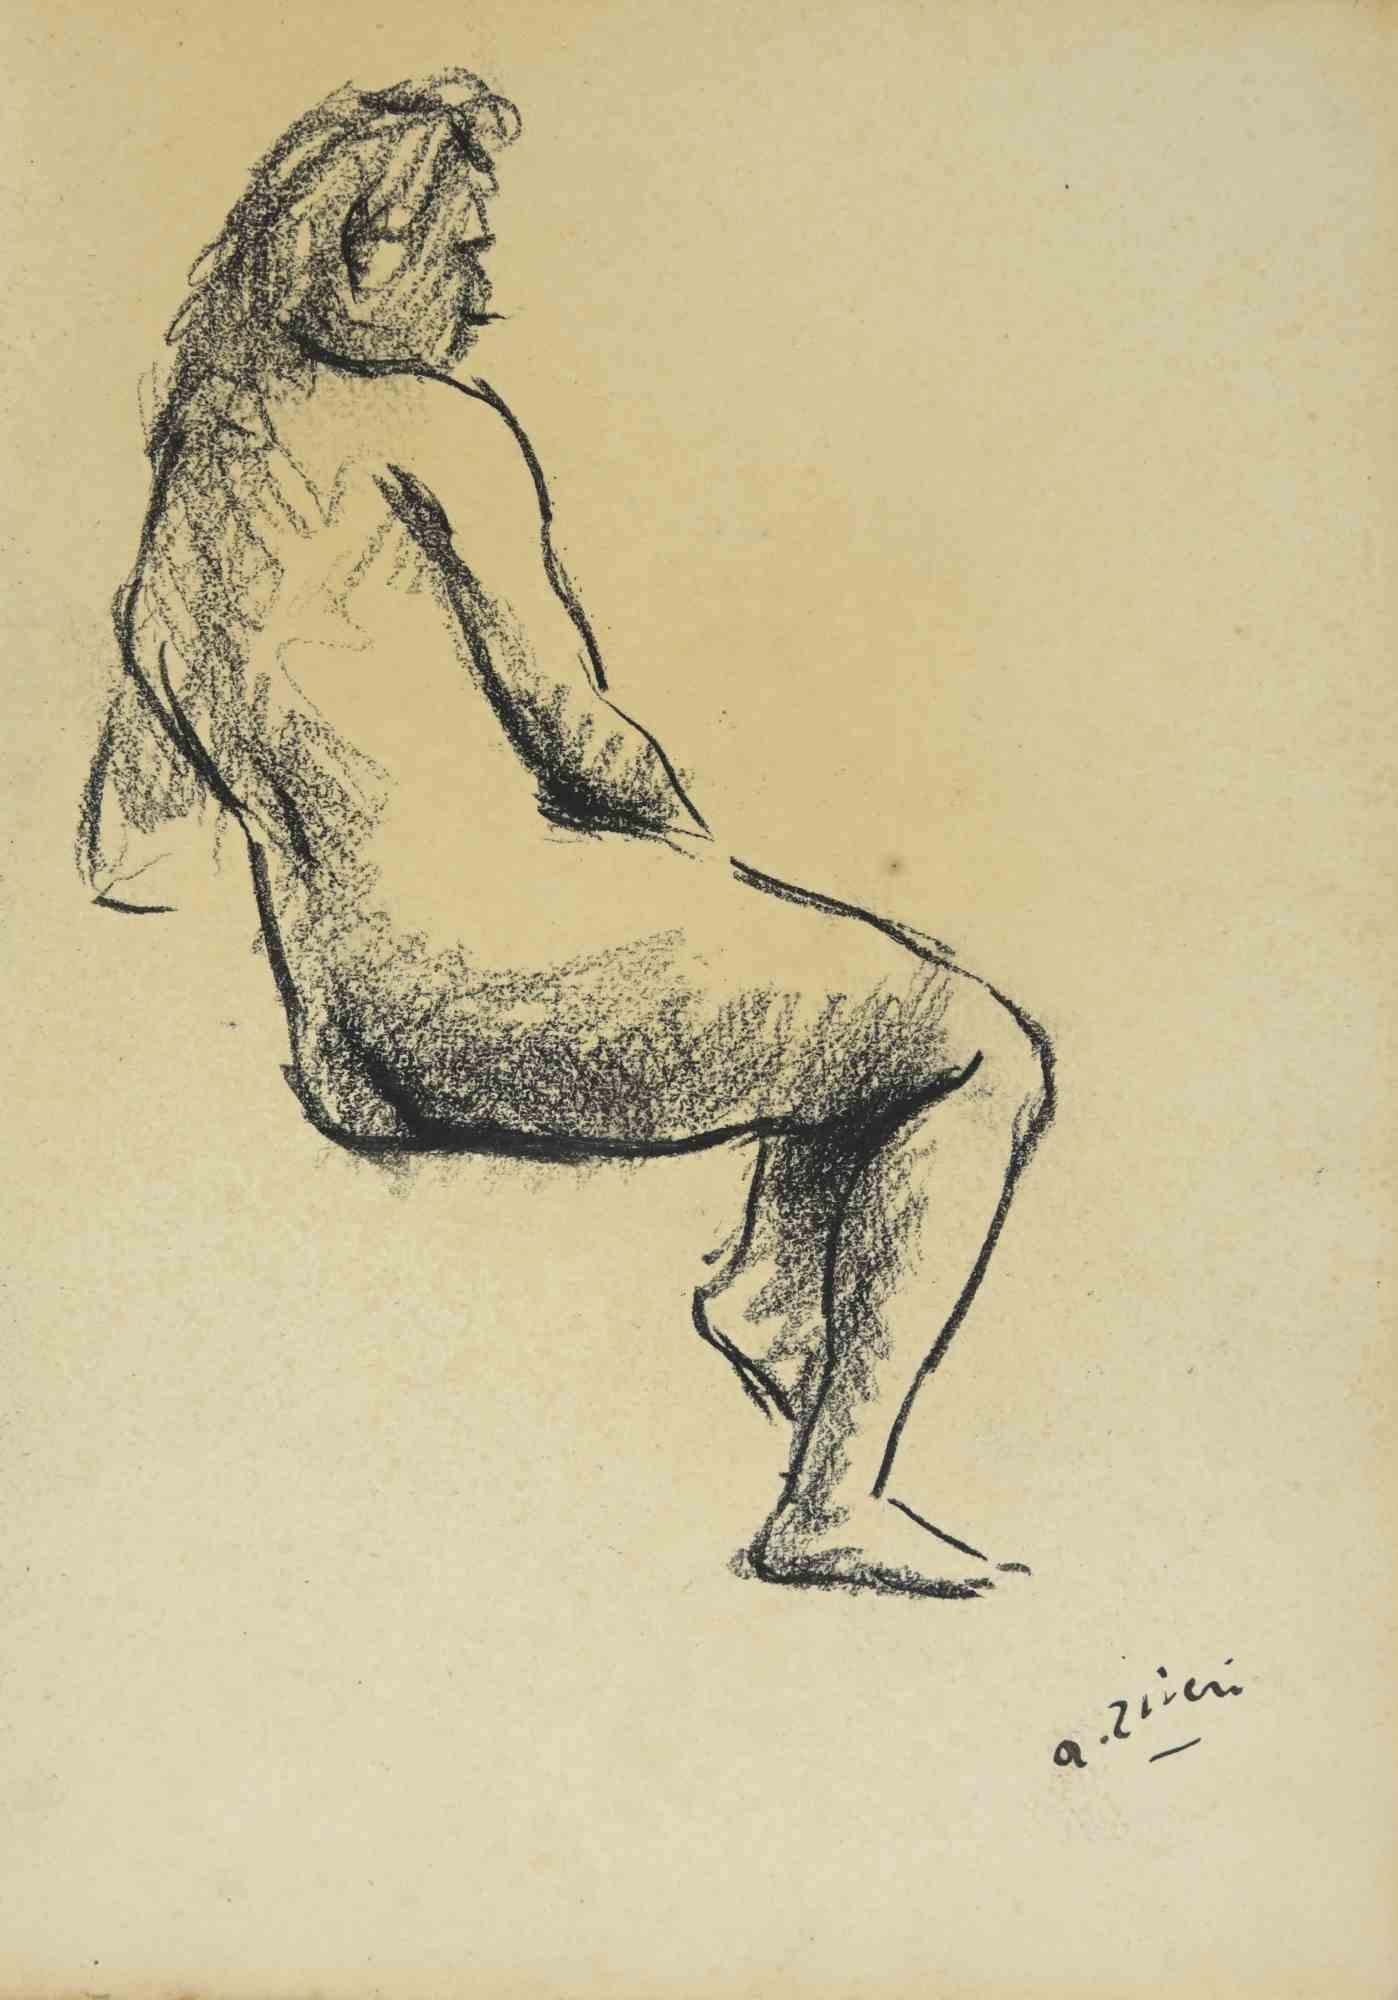 Akt ist eine Zeichnung von Alberto Ziveri aus den 1930er Jahren.

Zeichenkohle auf Papier.

Handsigniert und datiert.

In gutem Zustand mit leichten Stockflecken.

Das Kunstwerk wird durch geschickte Striche meisterhaft dargestellt.

Alberto Ziveri